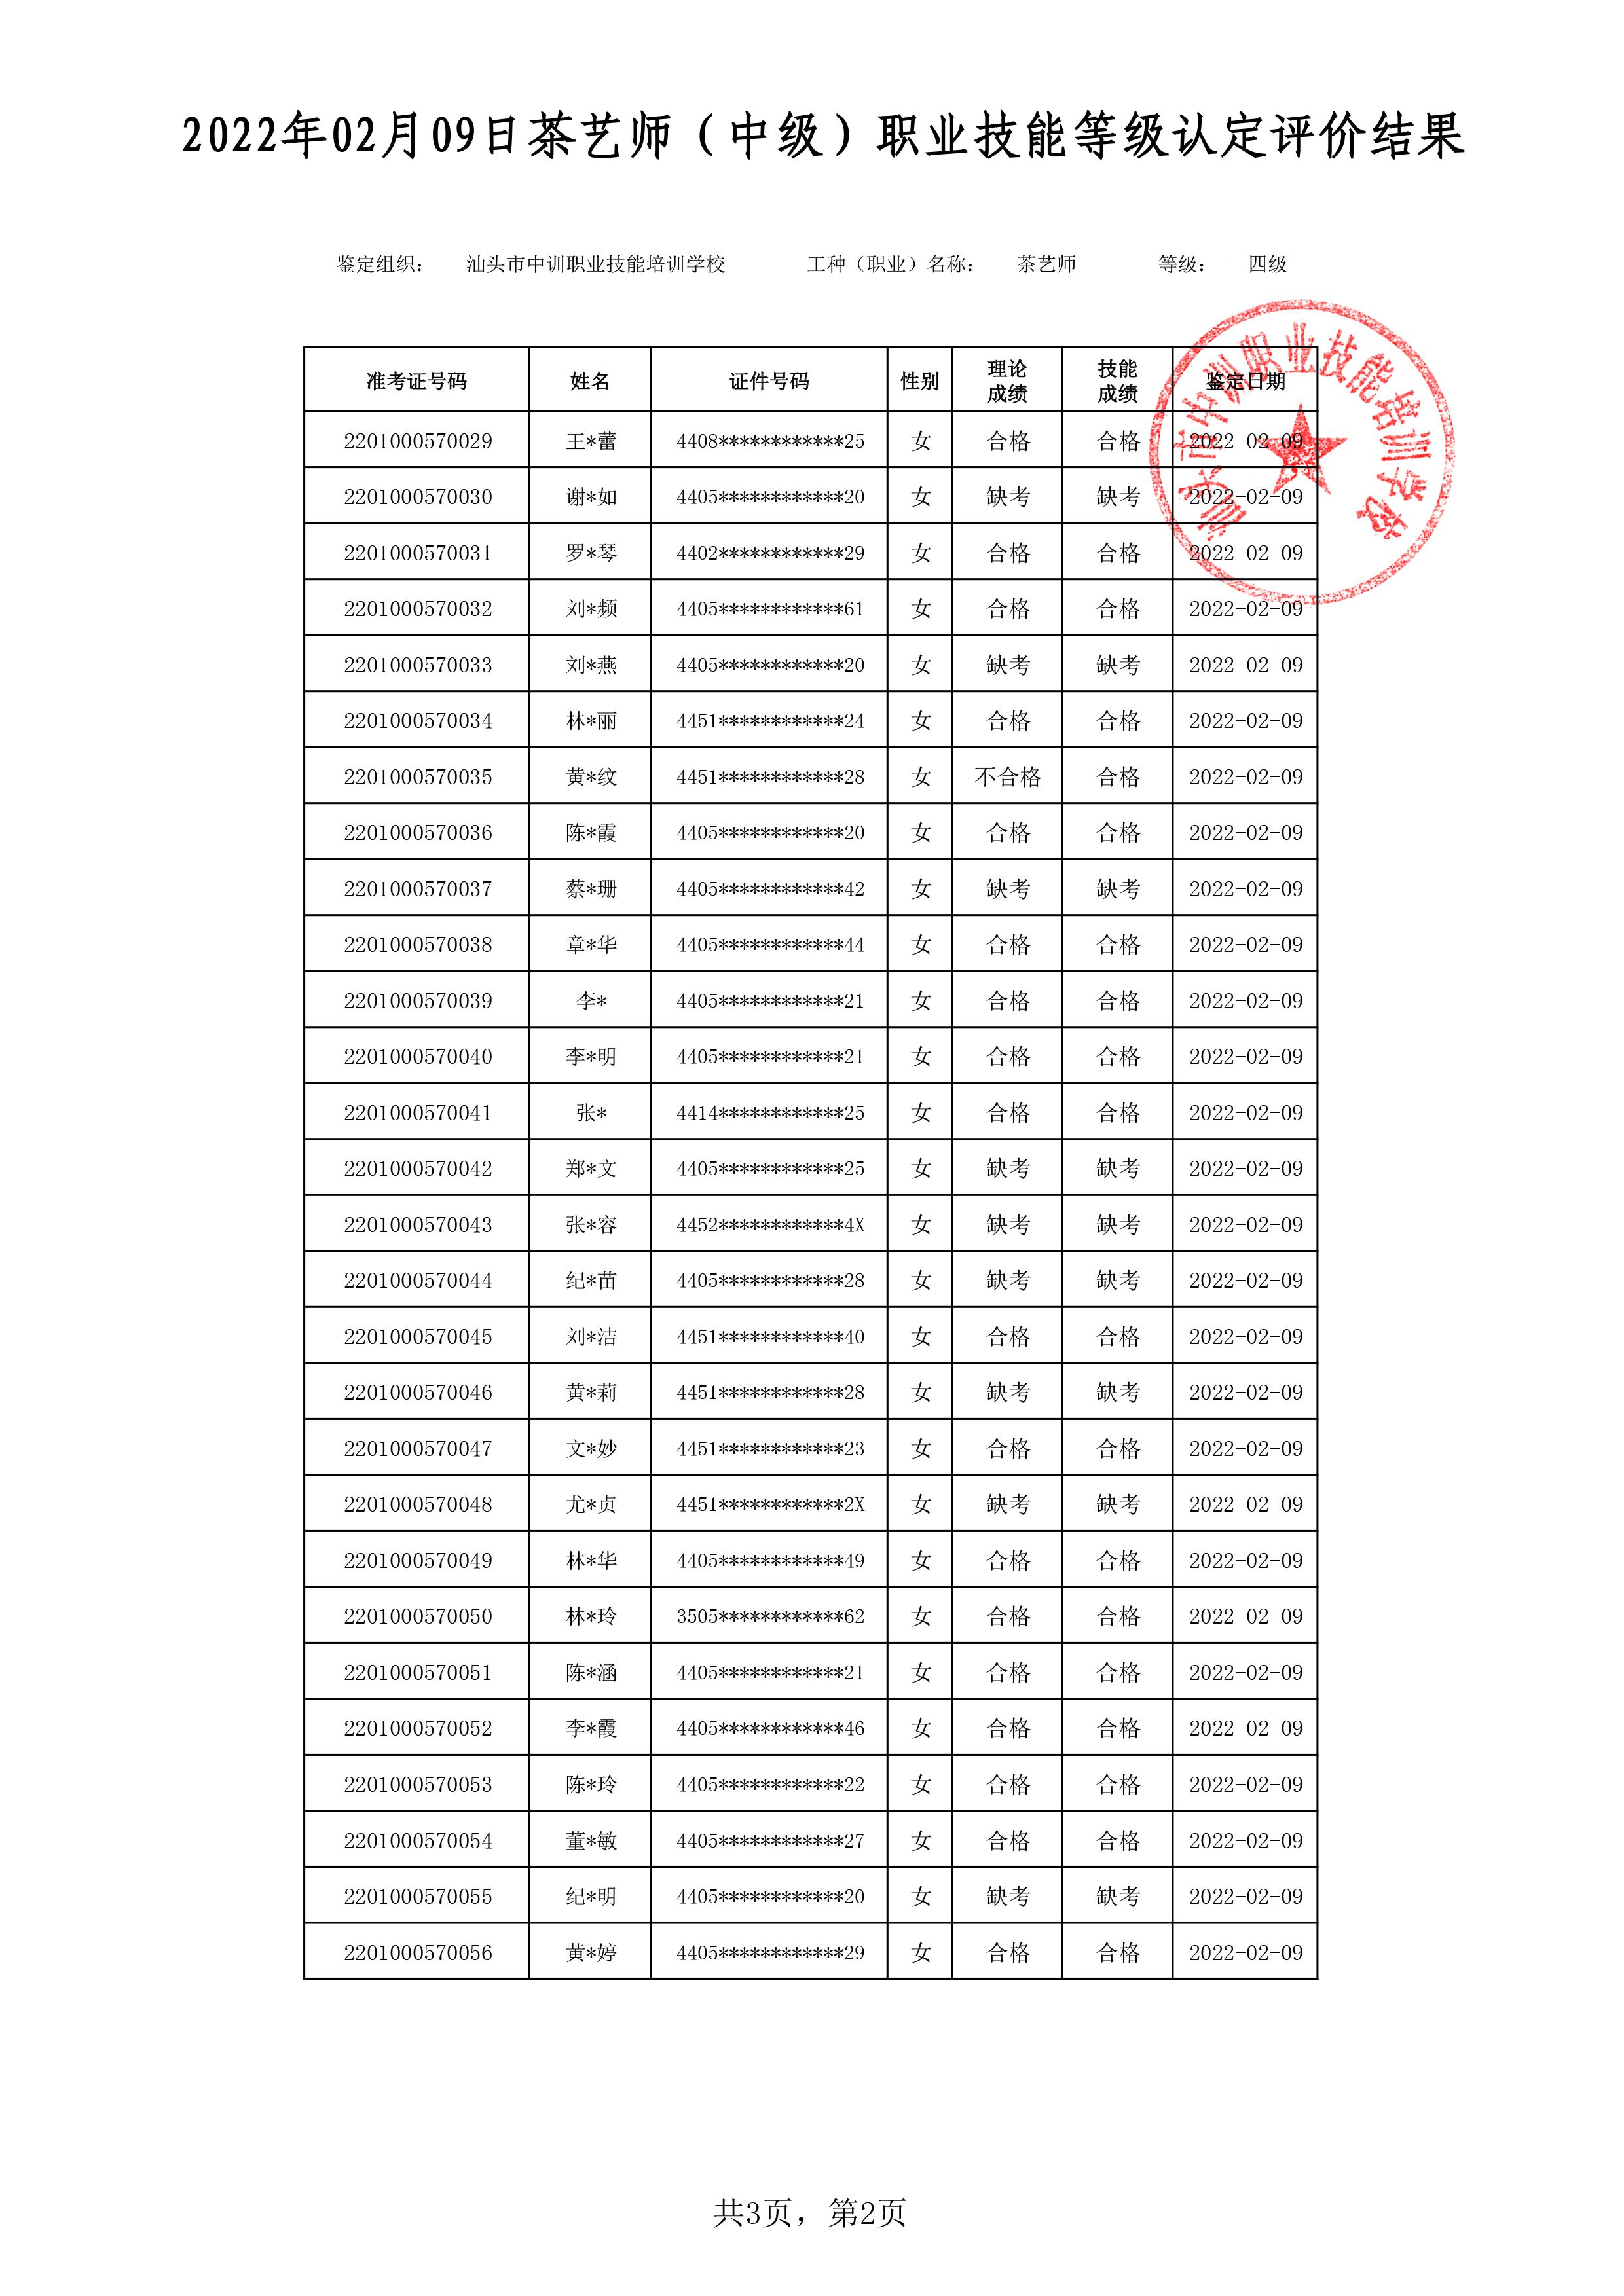 22-02-09四级茶艺师考试鉴定名册表-2 副本.jpg